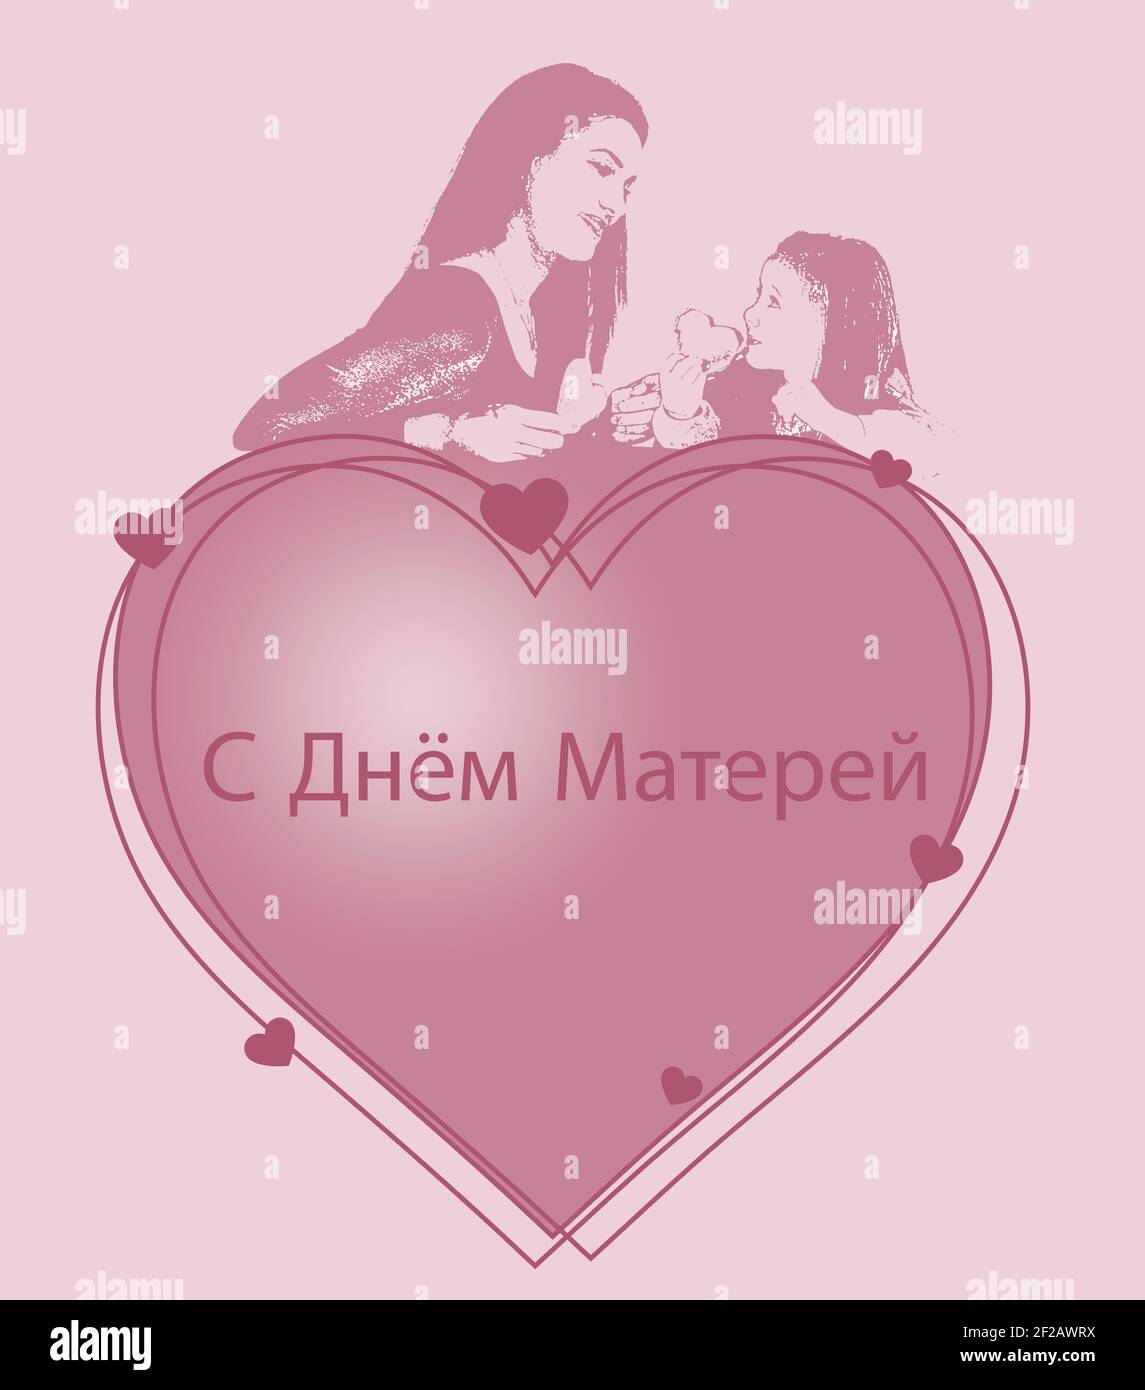 Affiche de fête des mères en russe. La personne la plus importante de notre vie, notre mère . Traduction : bonne fête des mères Banque D'Images